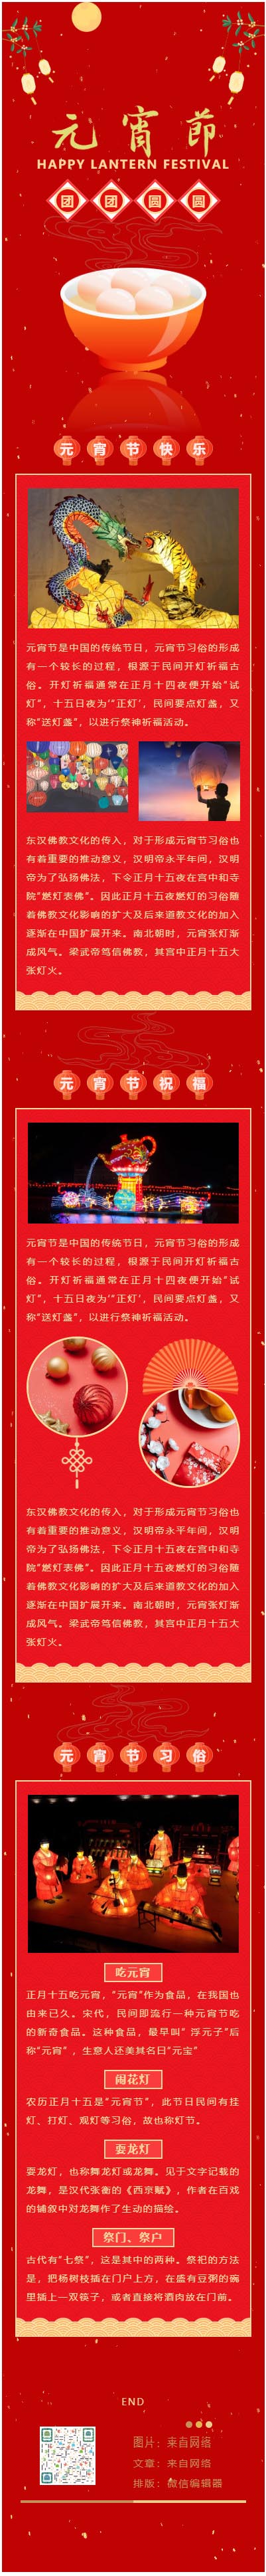 微信元宵节中国的传统节日正月十五推文模板推送图文素材公众号文章